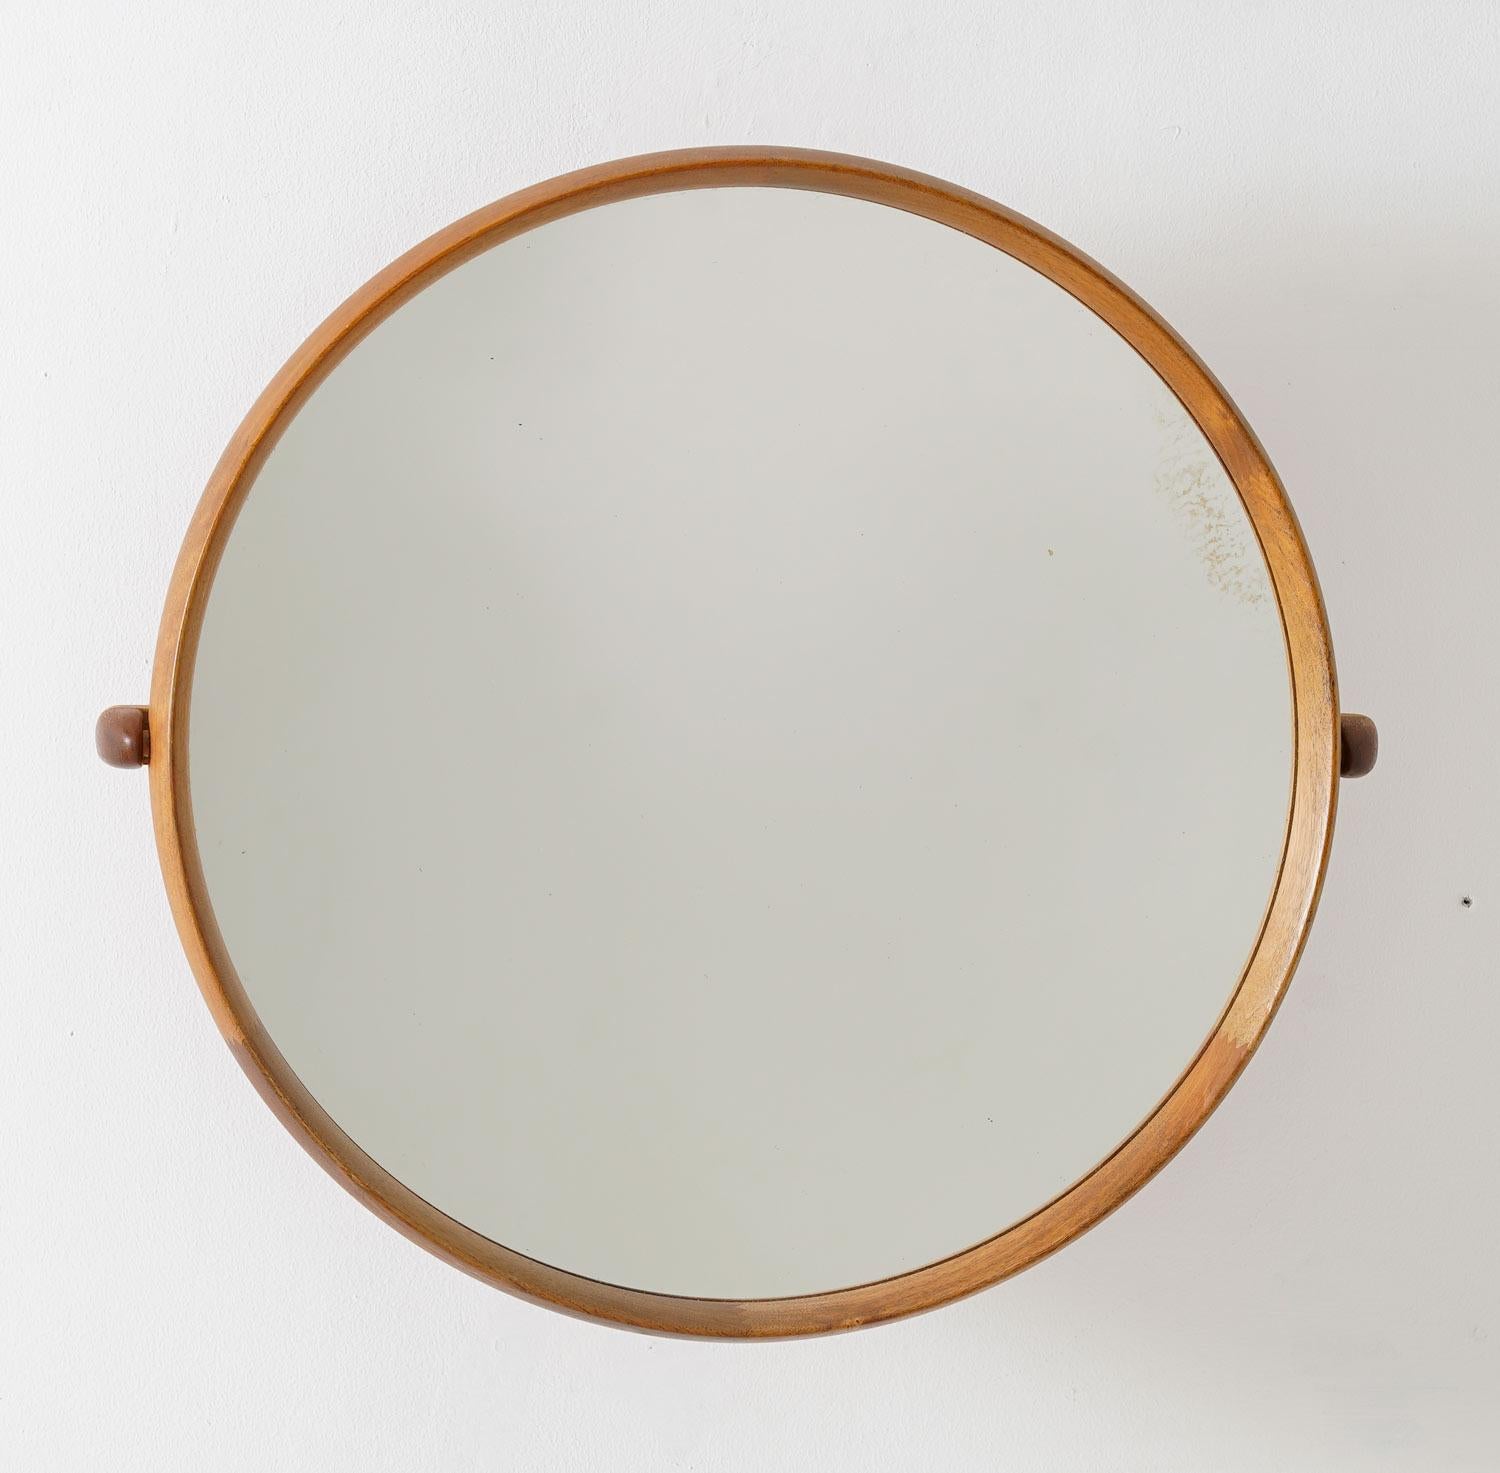 Schöner runder Spiegel aus der Mitte des Jahrhunderts von Uno & Östen Kristiansson für Luxus, Schweden.
Der Wandspiegel mit Schwenkarm ist aus Teakholz mit Details aus Eiche gefertigt. 

Zustand: Sehr guter Zustand mit Altersspuren auf dem